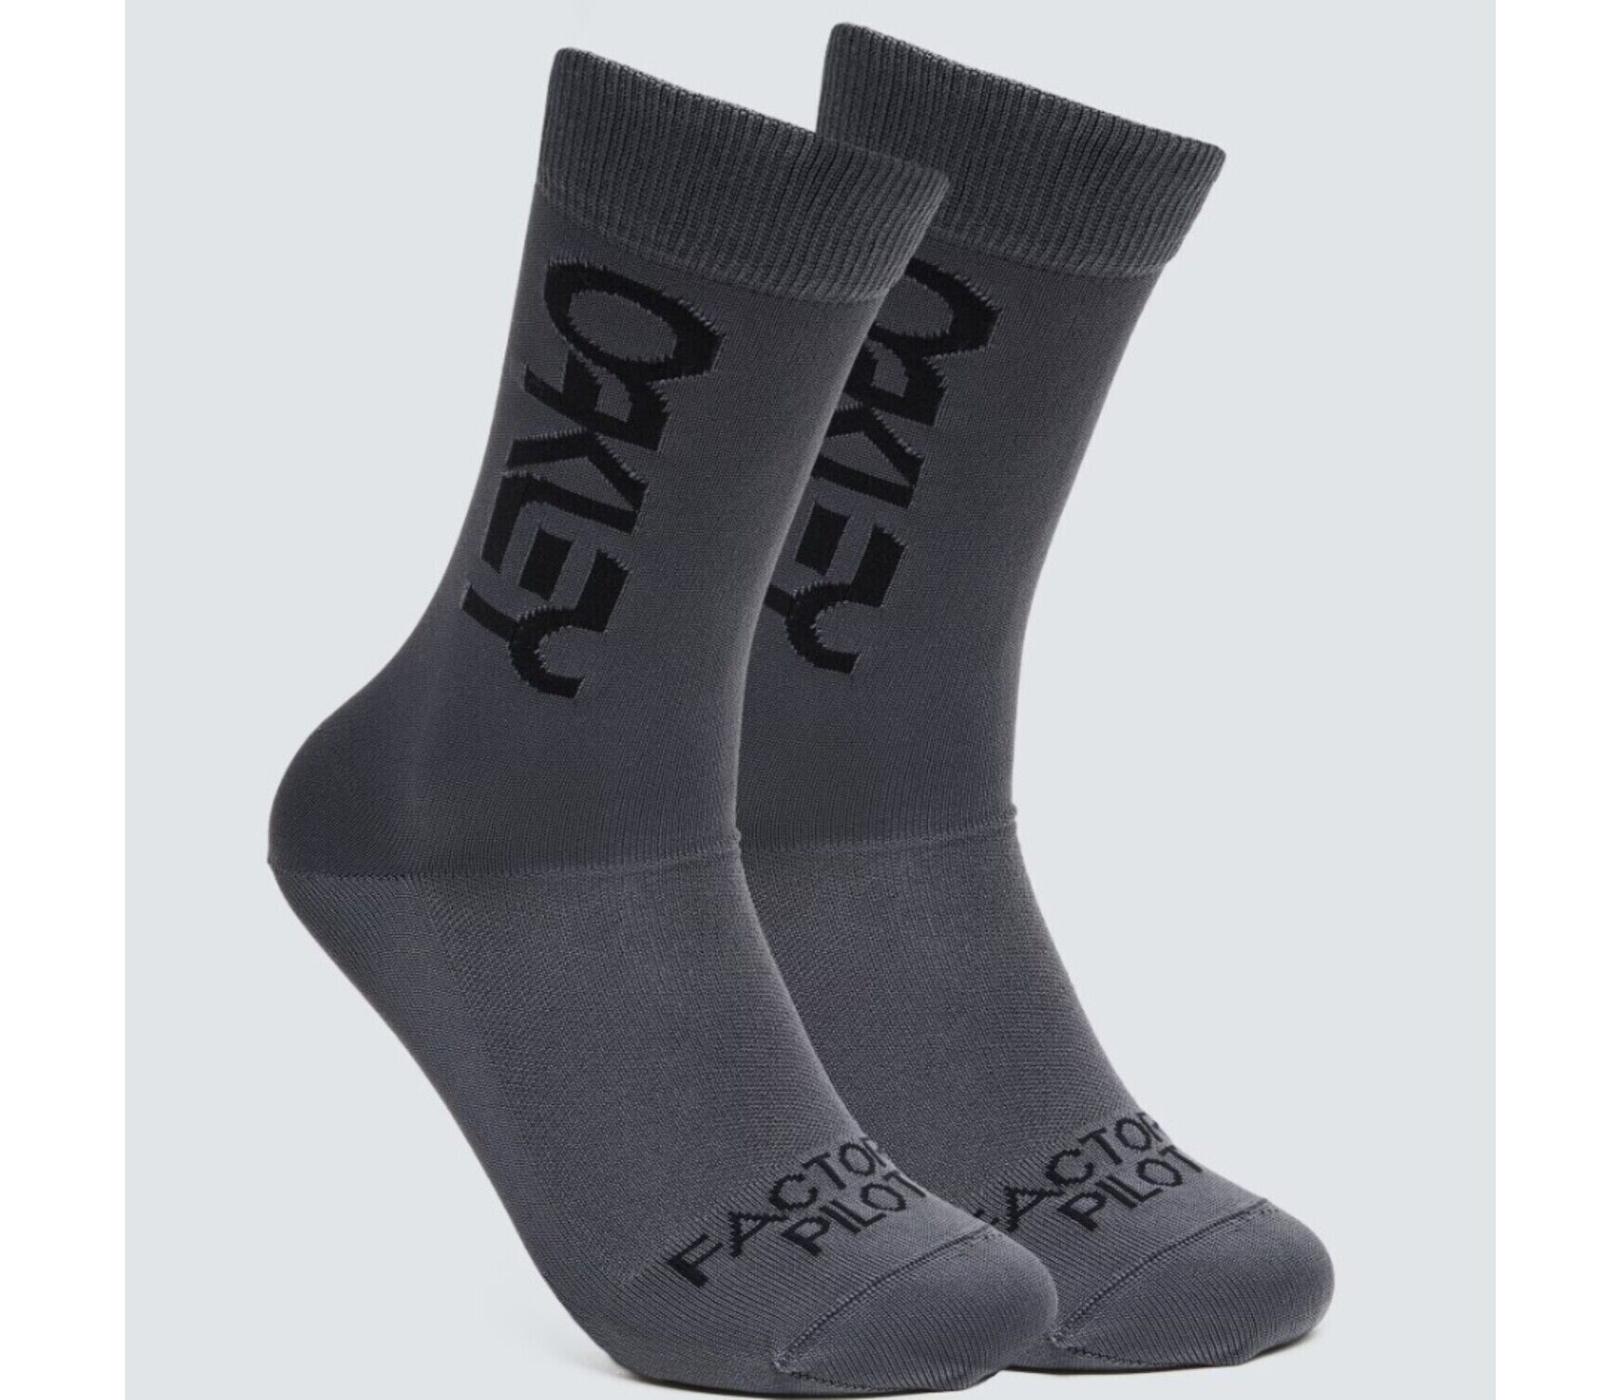 Oakley Factory Pilot Grey Men's Socks 